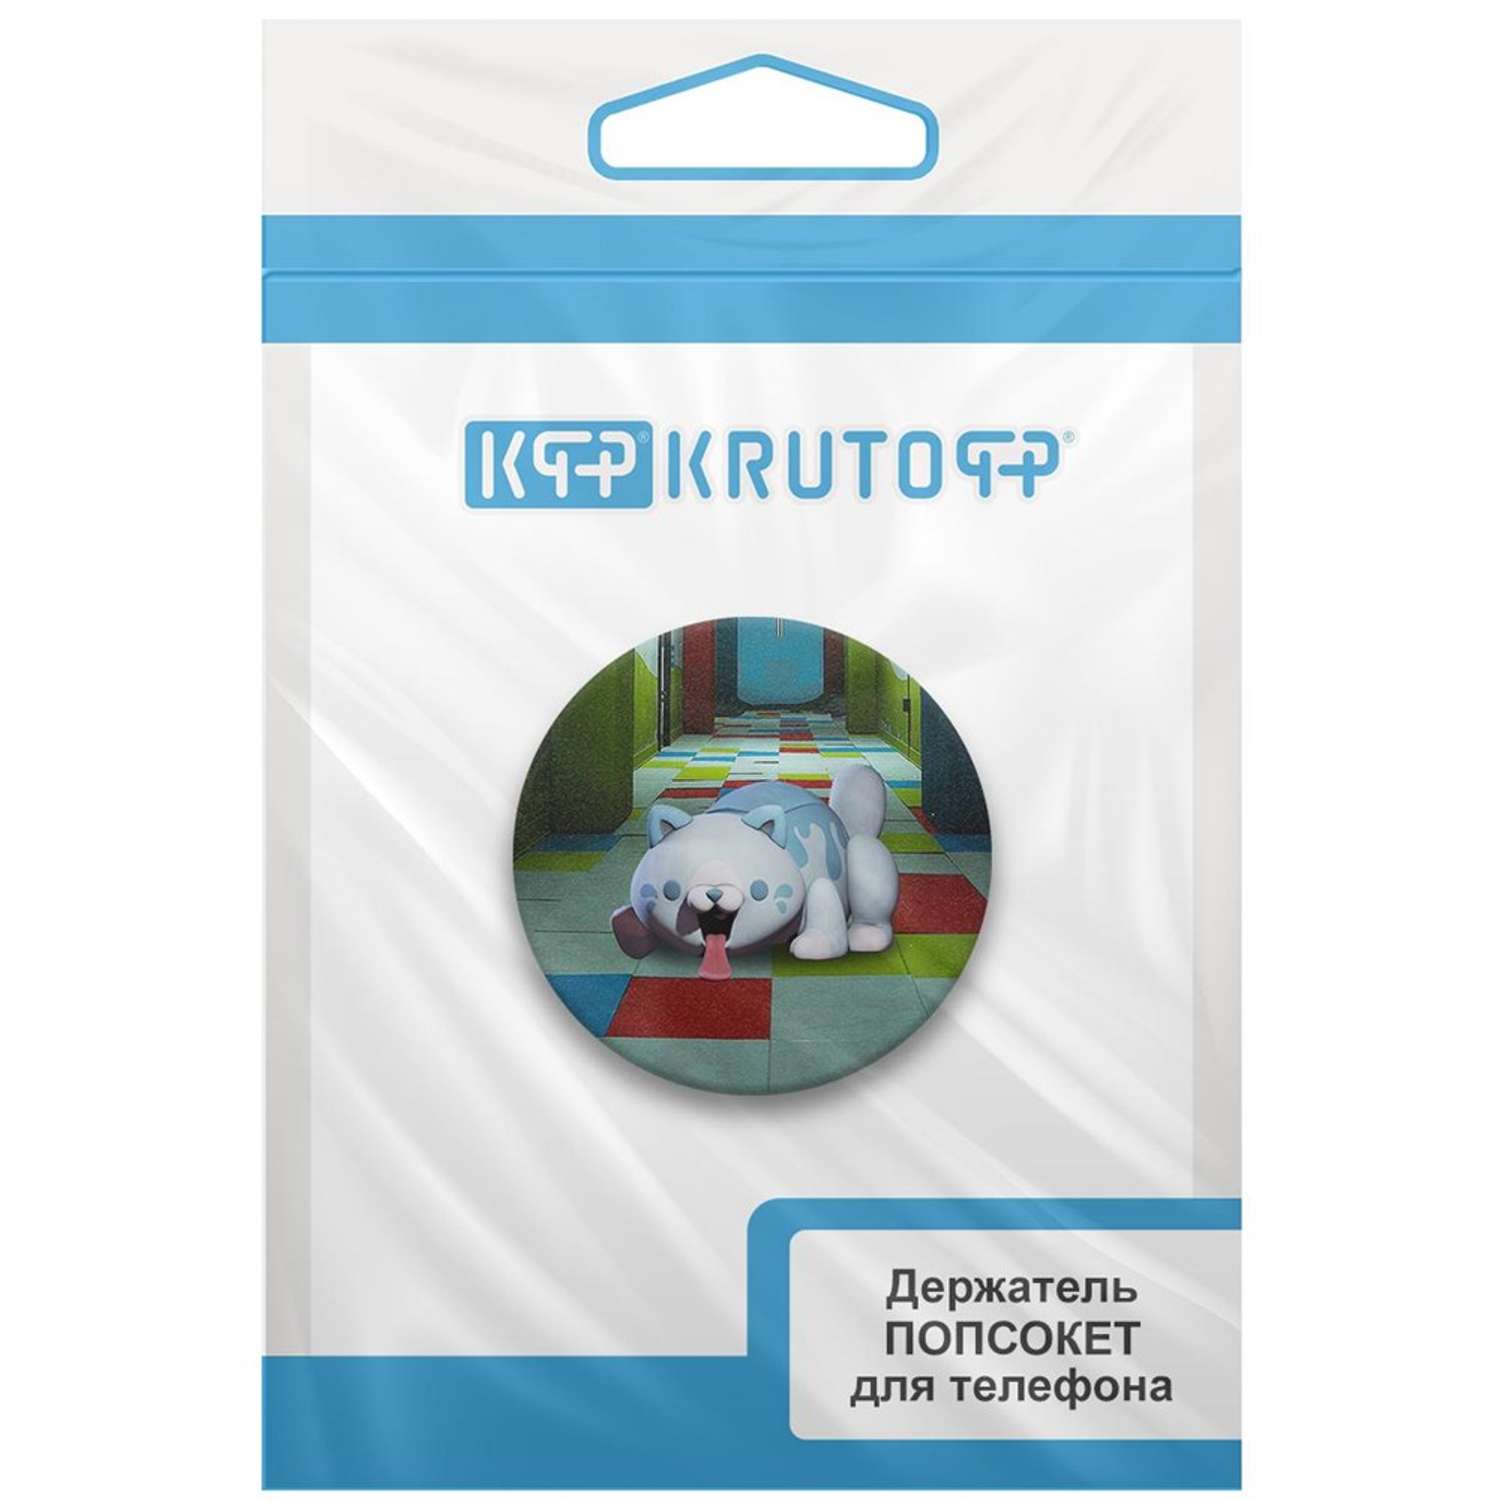 Пластмассовый держатель Krutoff хаги ваги конфетная кошка для телефона - фото 7